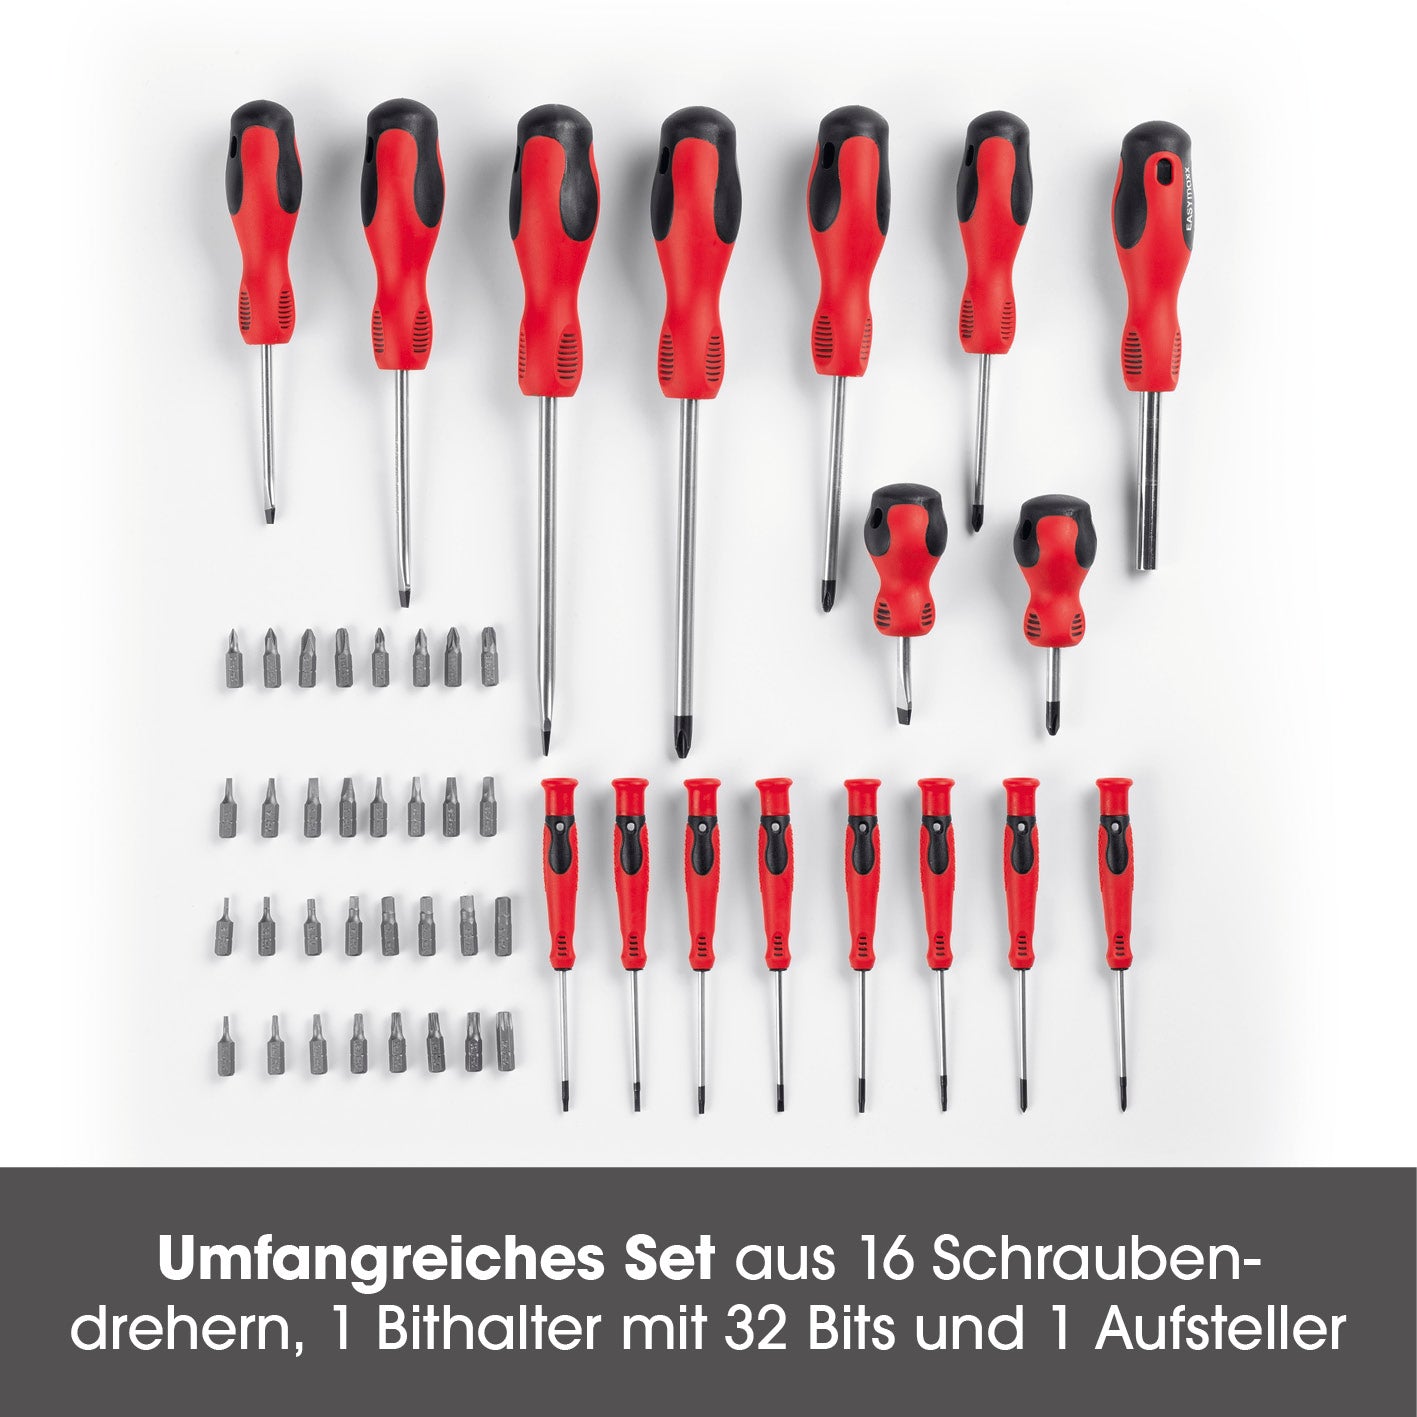 Schraubendreher- & Bitsatz-Set mit Ständer - 50-tlg. - rot/schwarz